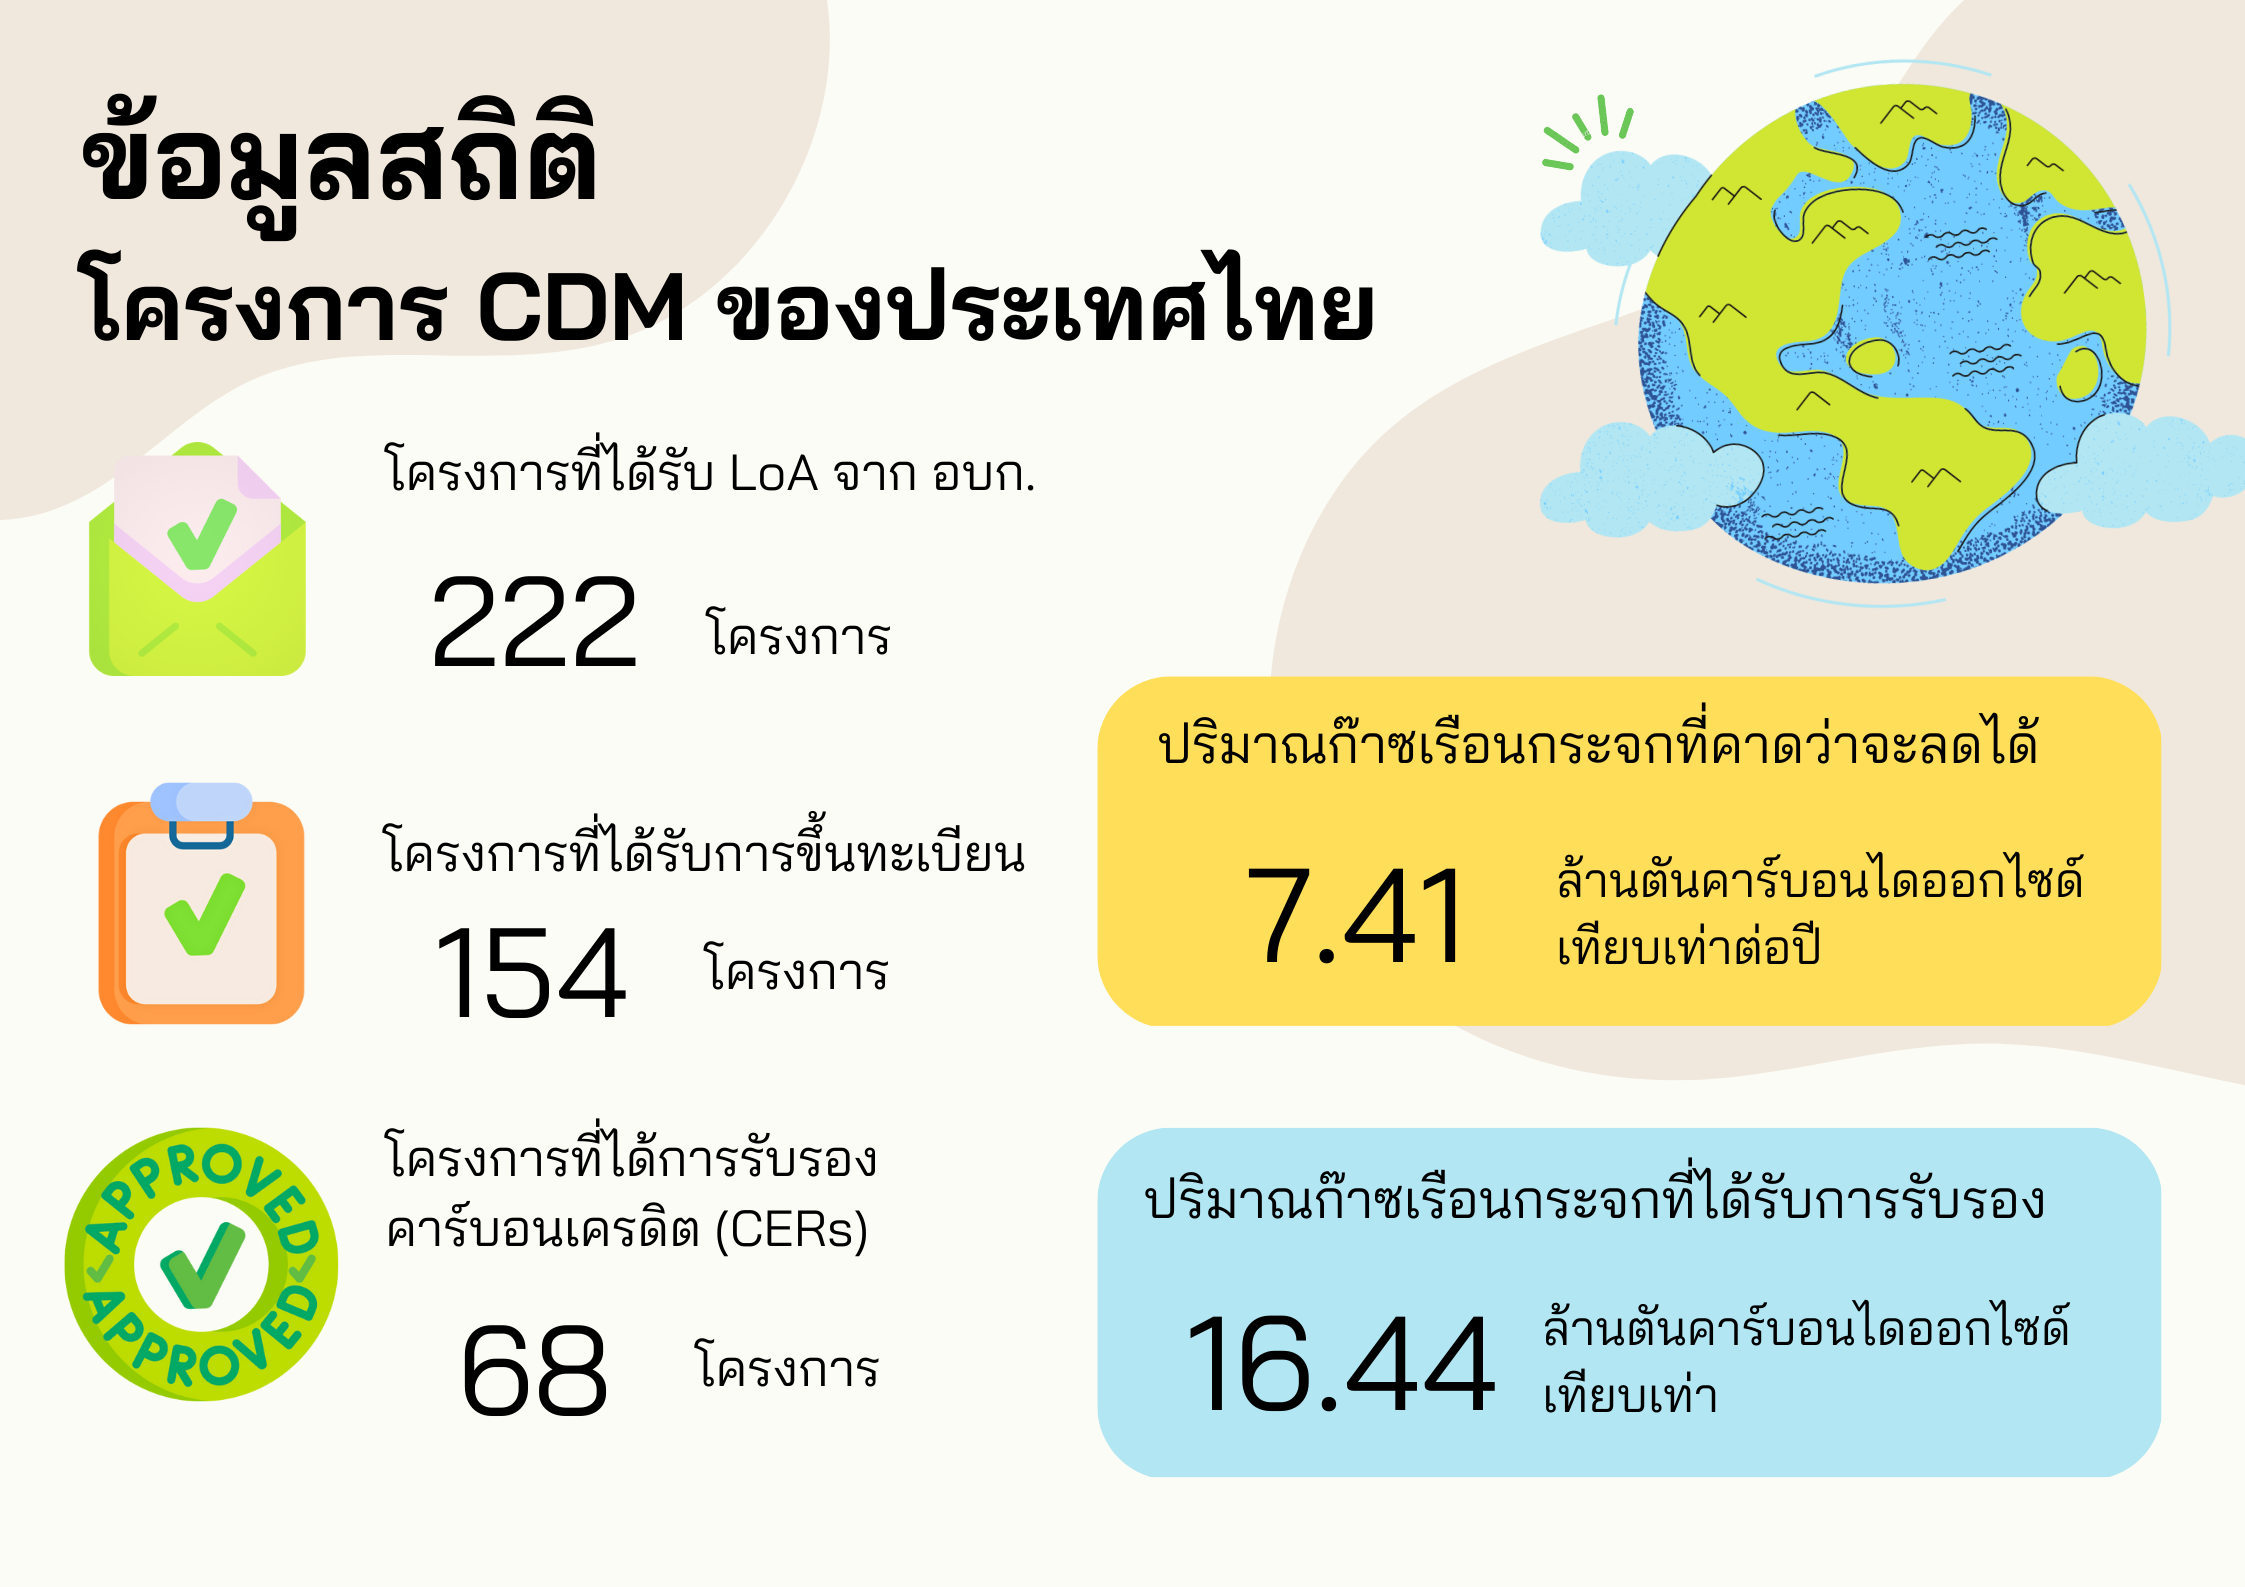 ข้อมูลสถิติ โครงการ CDM ของประเทศไทย